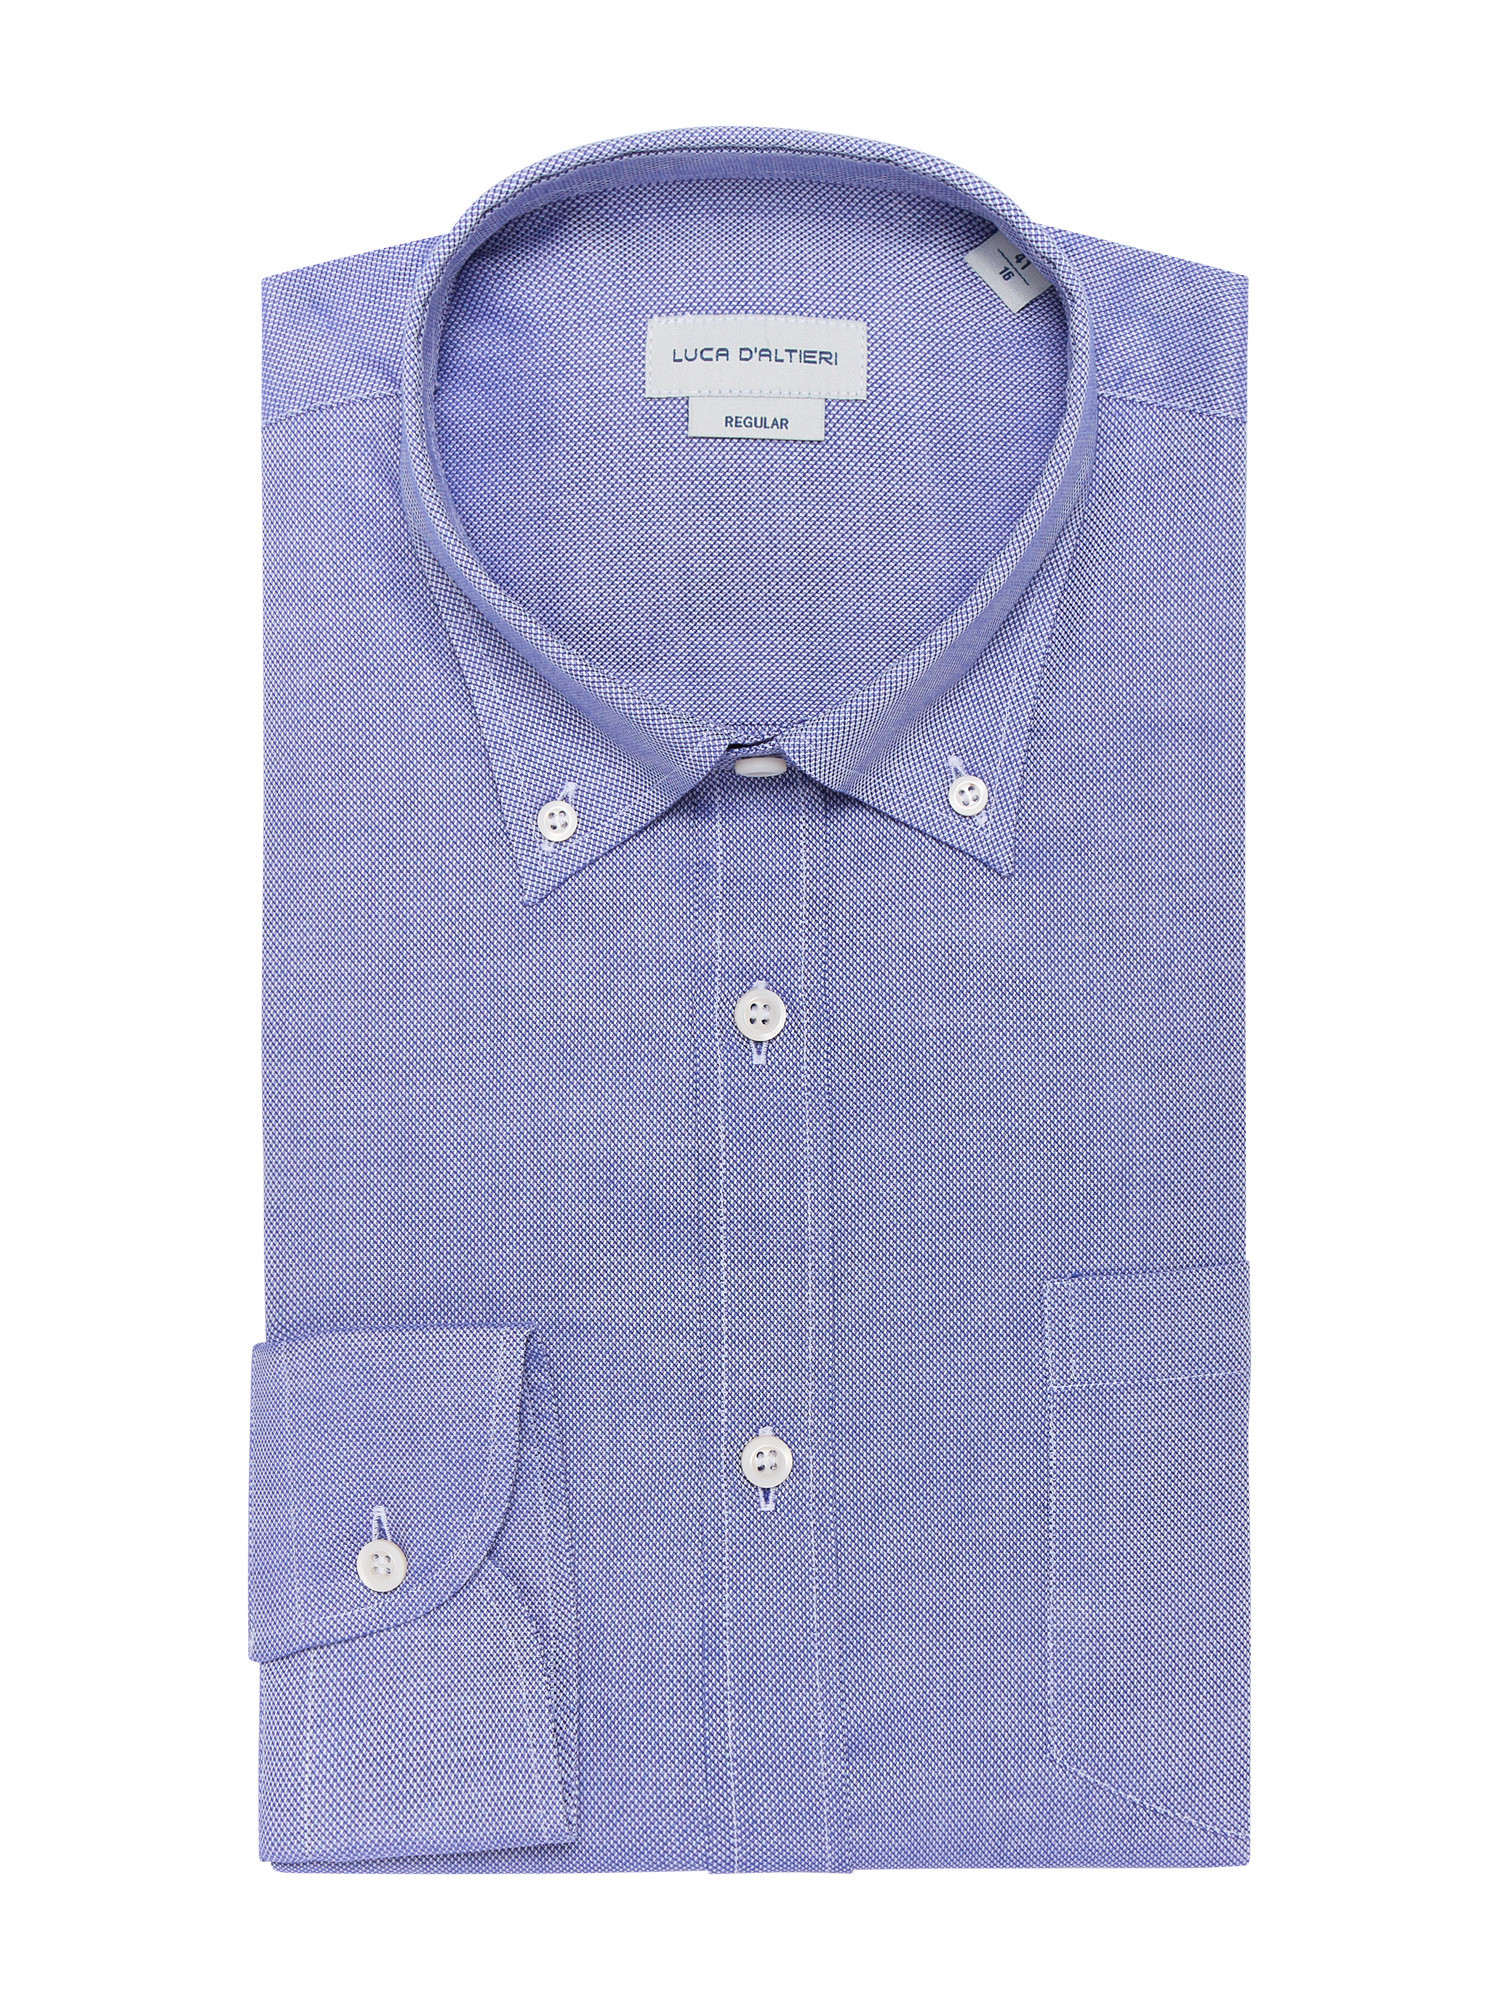 Luca D'Altieri повседневная рубашка обычного кроя из чистого фактурного хлопка, голубой рубашка однотонная с длинными рукавами и костюмным воротником